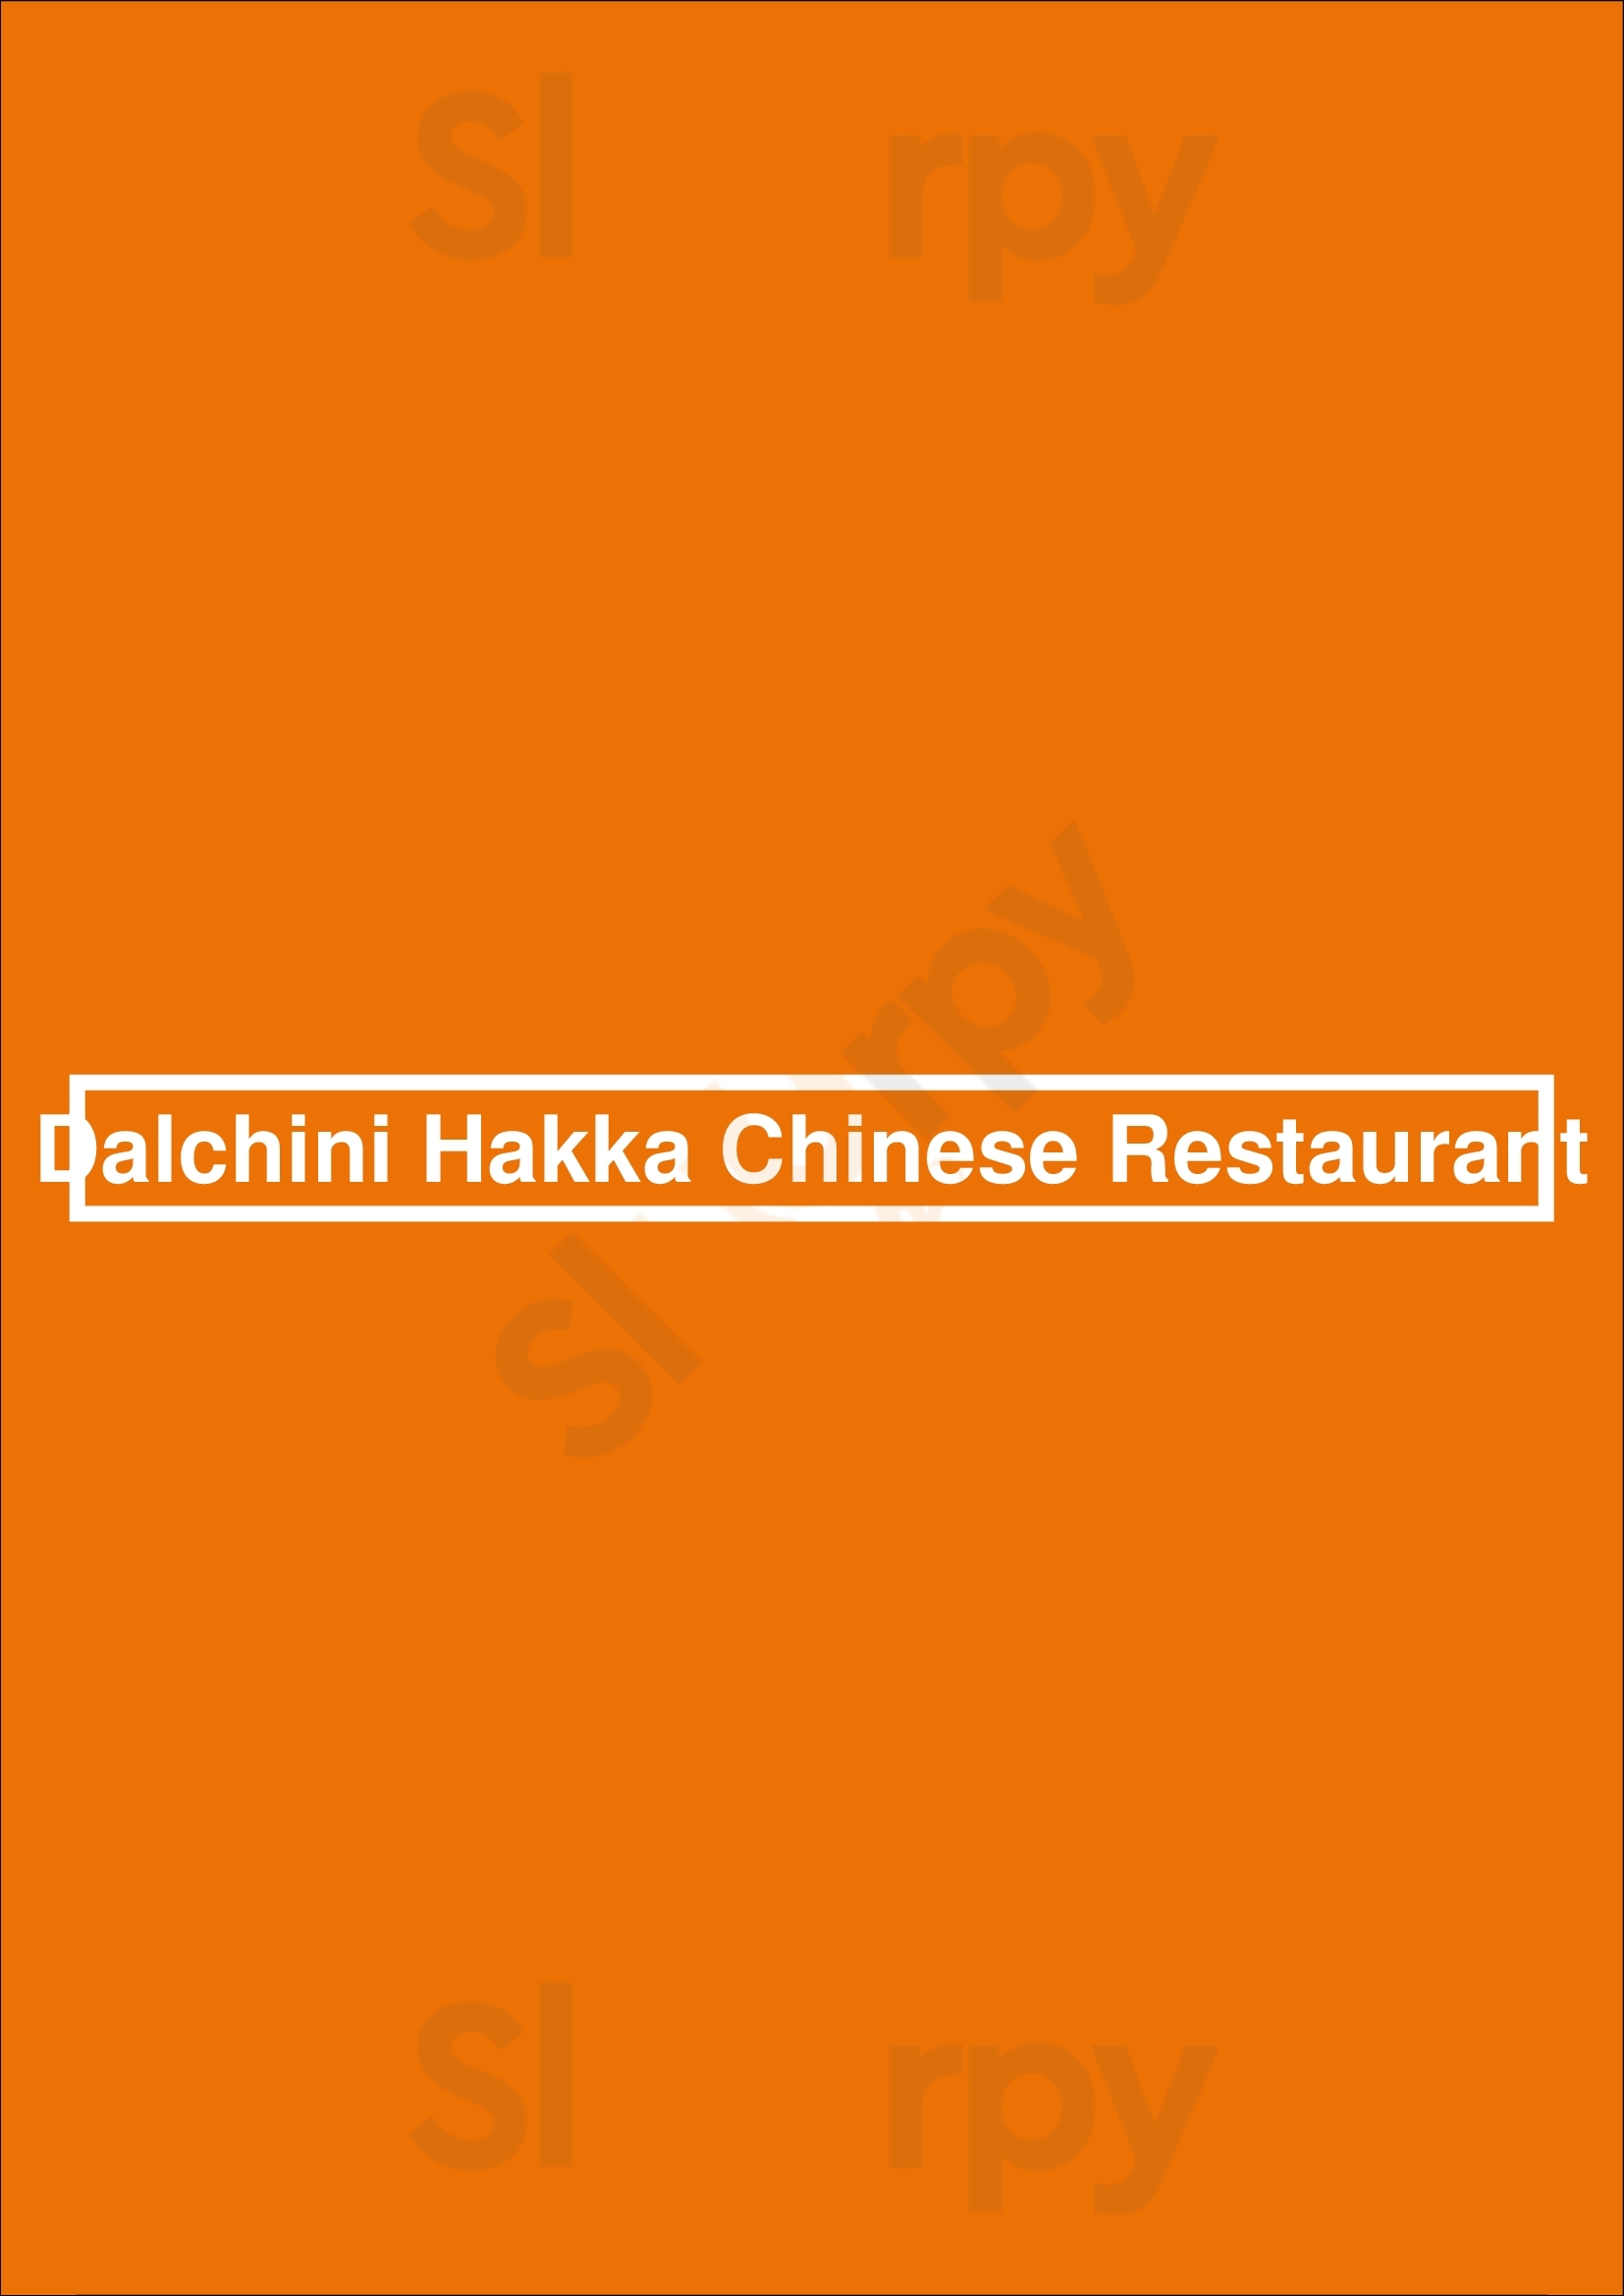 Dalchini Hakka Chinese Restaurant Brampton Menu - 1